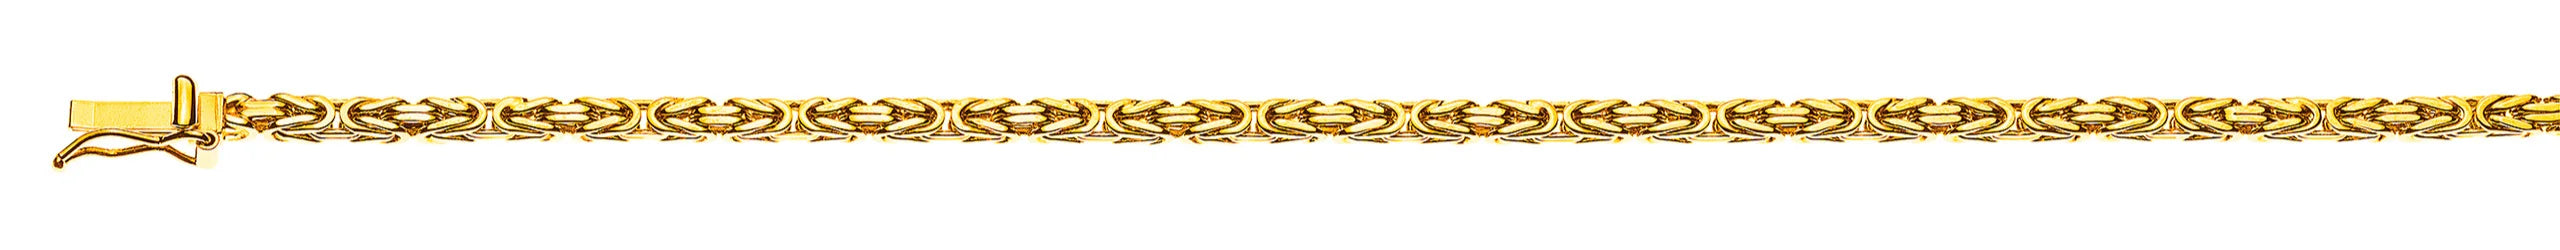 Collier Königskette klassisch Gelbgold 750 ca. 2.5 mm x 55 cm